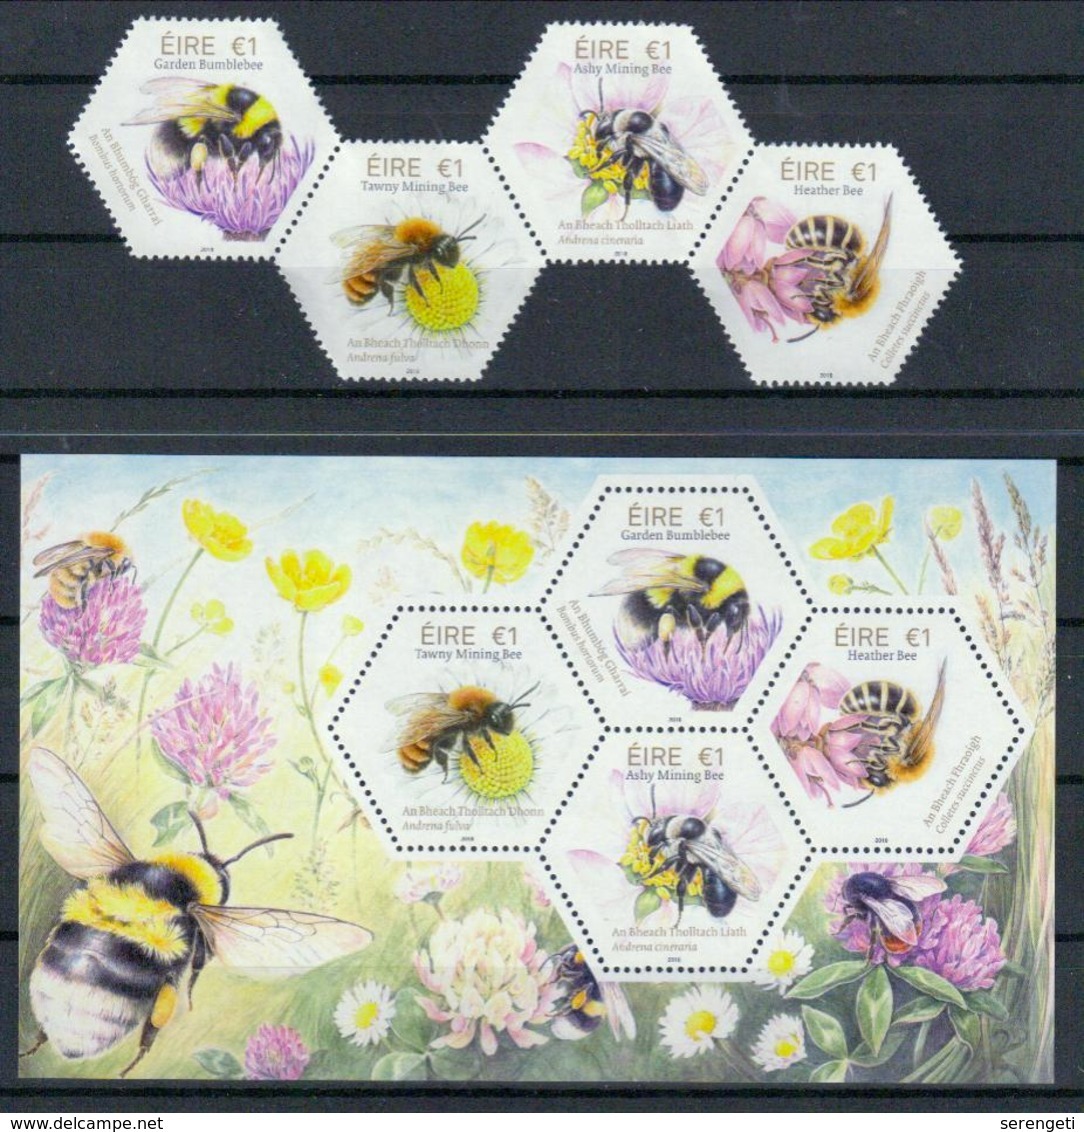 Irland 'In Irland Heimische Bienen' / Ireland 'Native Irish Bees' **/MNH 2018 - Abeilles